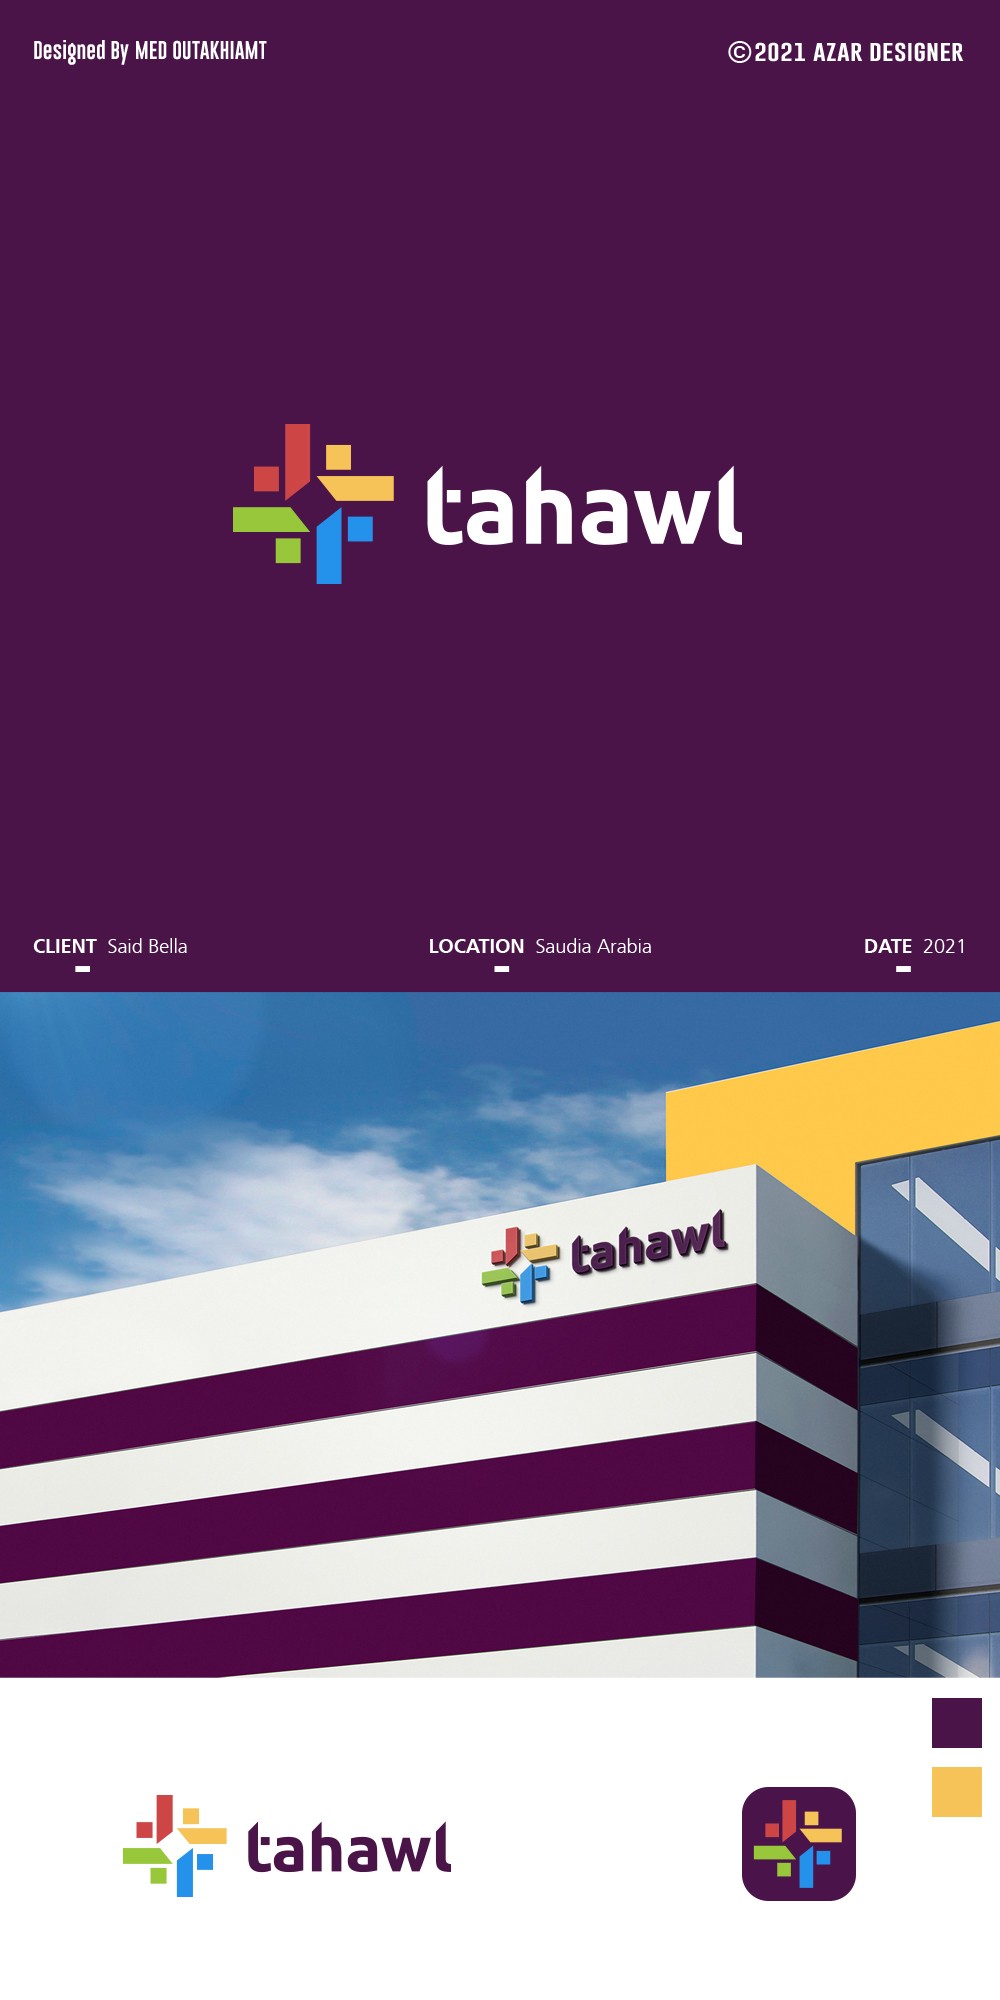 TAHAWL-LOGO-DESIGN-2